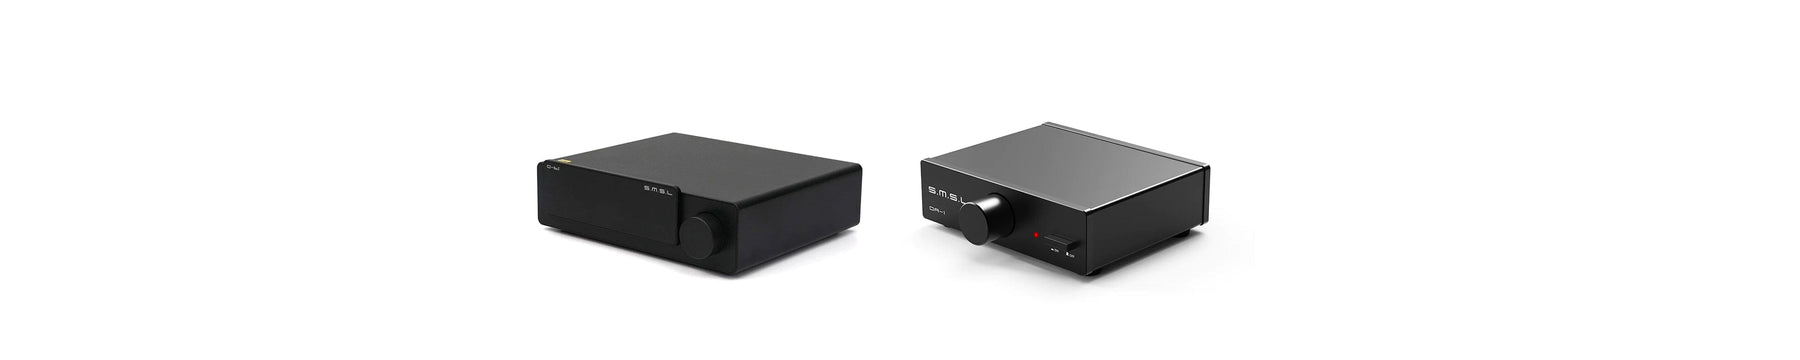 SMSL Introduces D6s ES9039Q2M Desktop DAC & DA1 Compact Stereo Power Amplifier